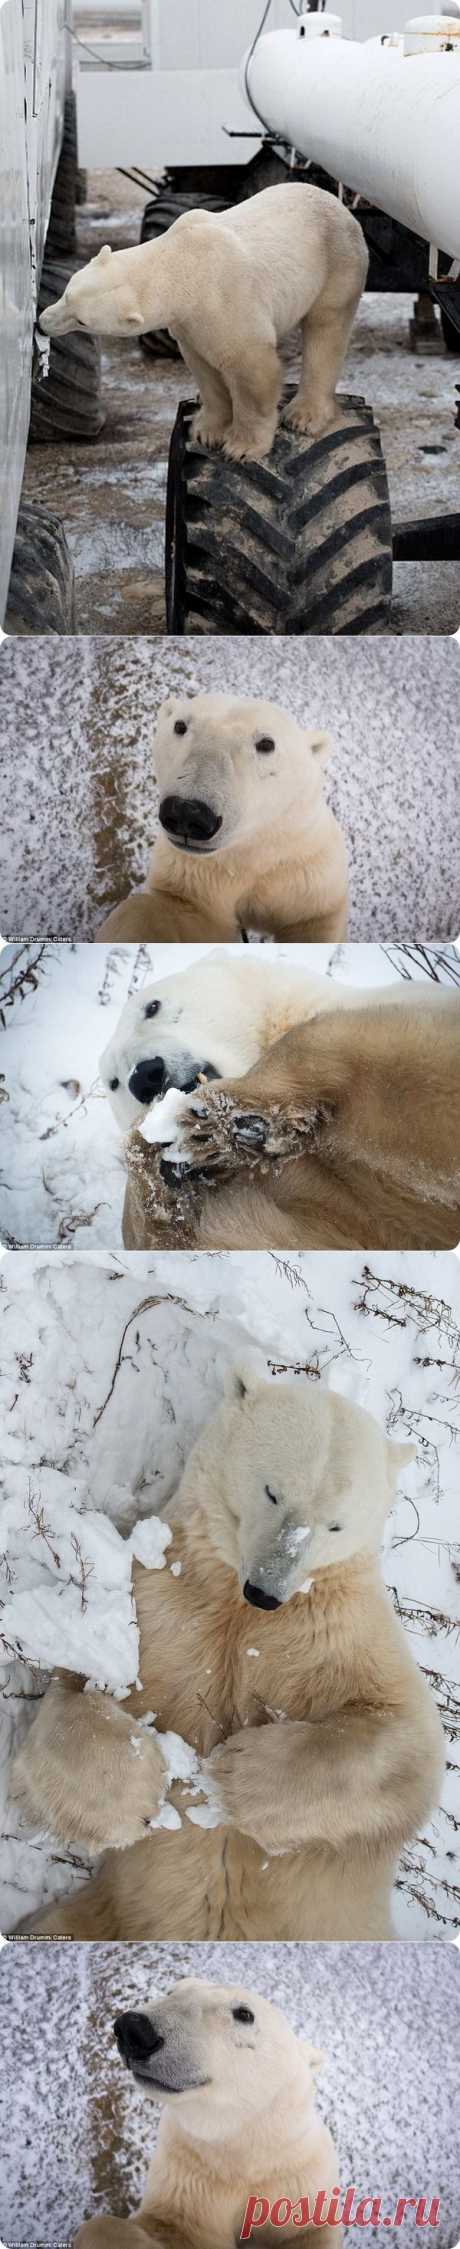 Любопытный полярный медведь из Черчилля | Дай лапку